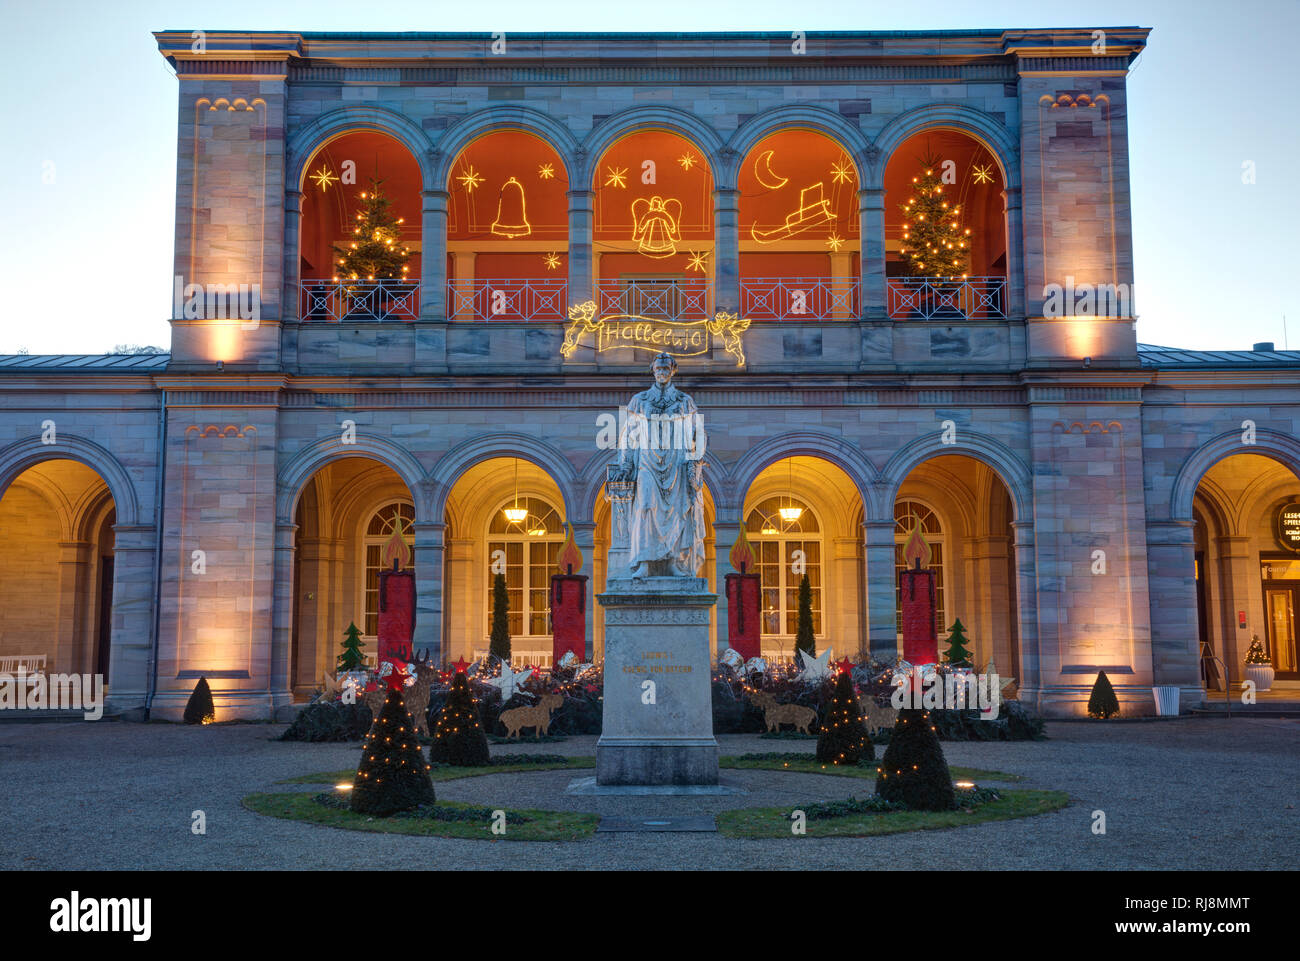 Arkadenbau, Ludwig I, Statue, Blaue Stunde, Weihnachten, Advent, Weihnachtsdekoration, Bad Kissingen Franken, Bayern, Deutschland, Europa Stock Photo